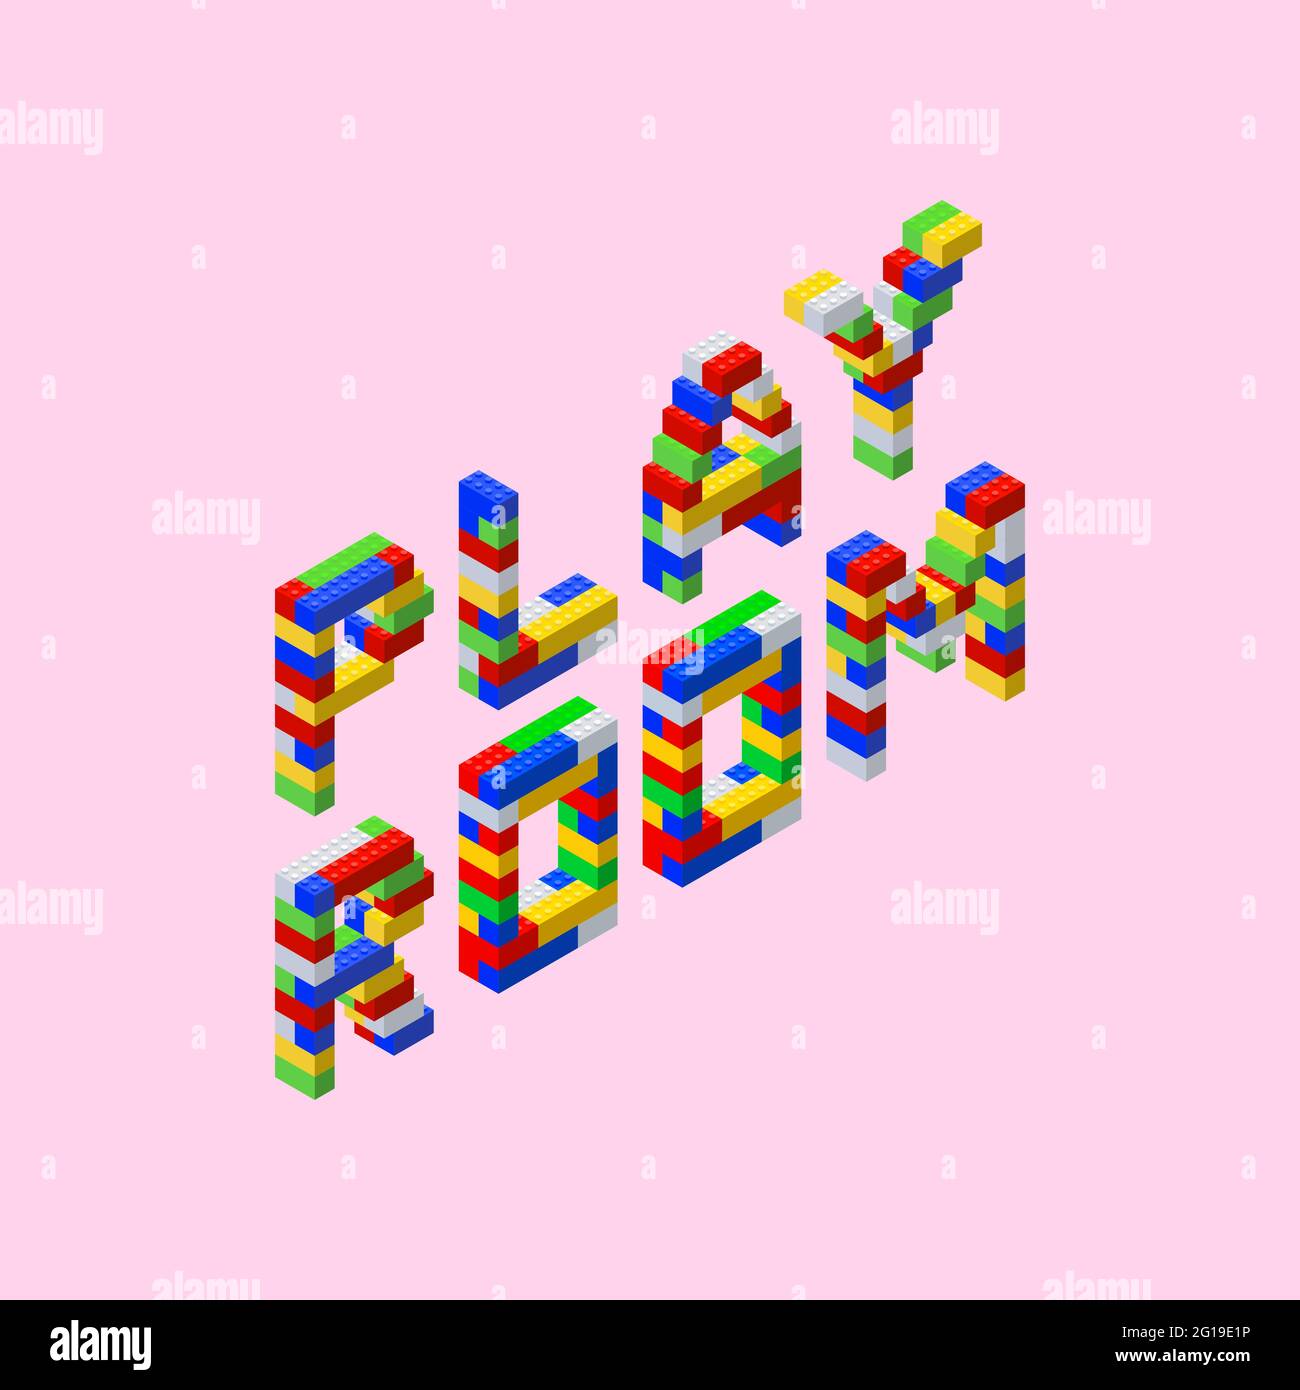 Phrase - Playroom - lettere costituite da blocchi di plastica colorati in stile isometrico su sfondo rosa. Illustrazione vettoriale. Illustrazione Vettoriale